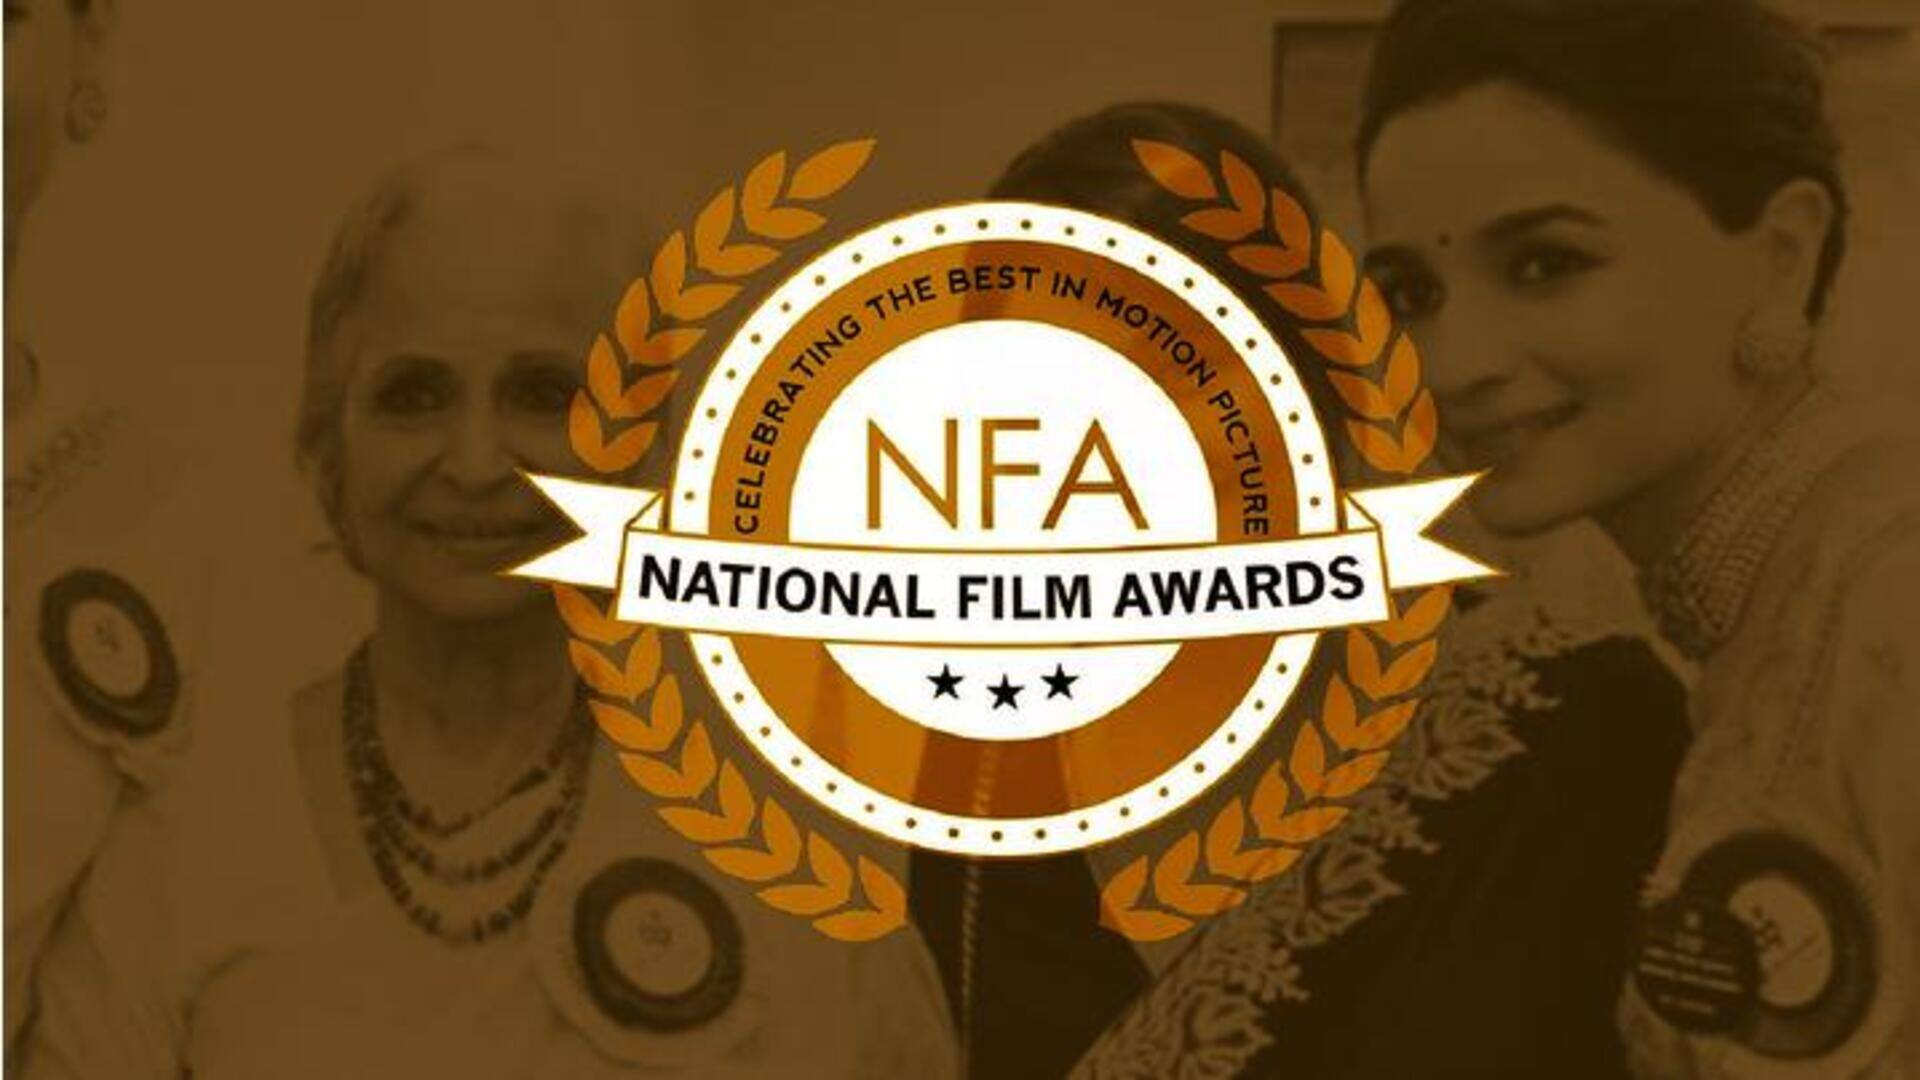 आलिया और कृति सैनन को मिला सर्वश्रेष्ठ अभिनेत्री का राष्ट्रीय फिल्म पुरस्कार, जानिए कौन-कौन बना विजेता